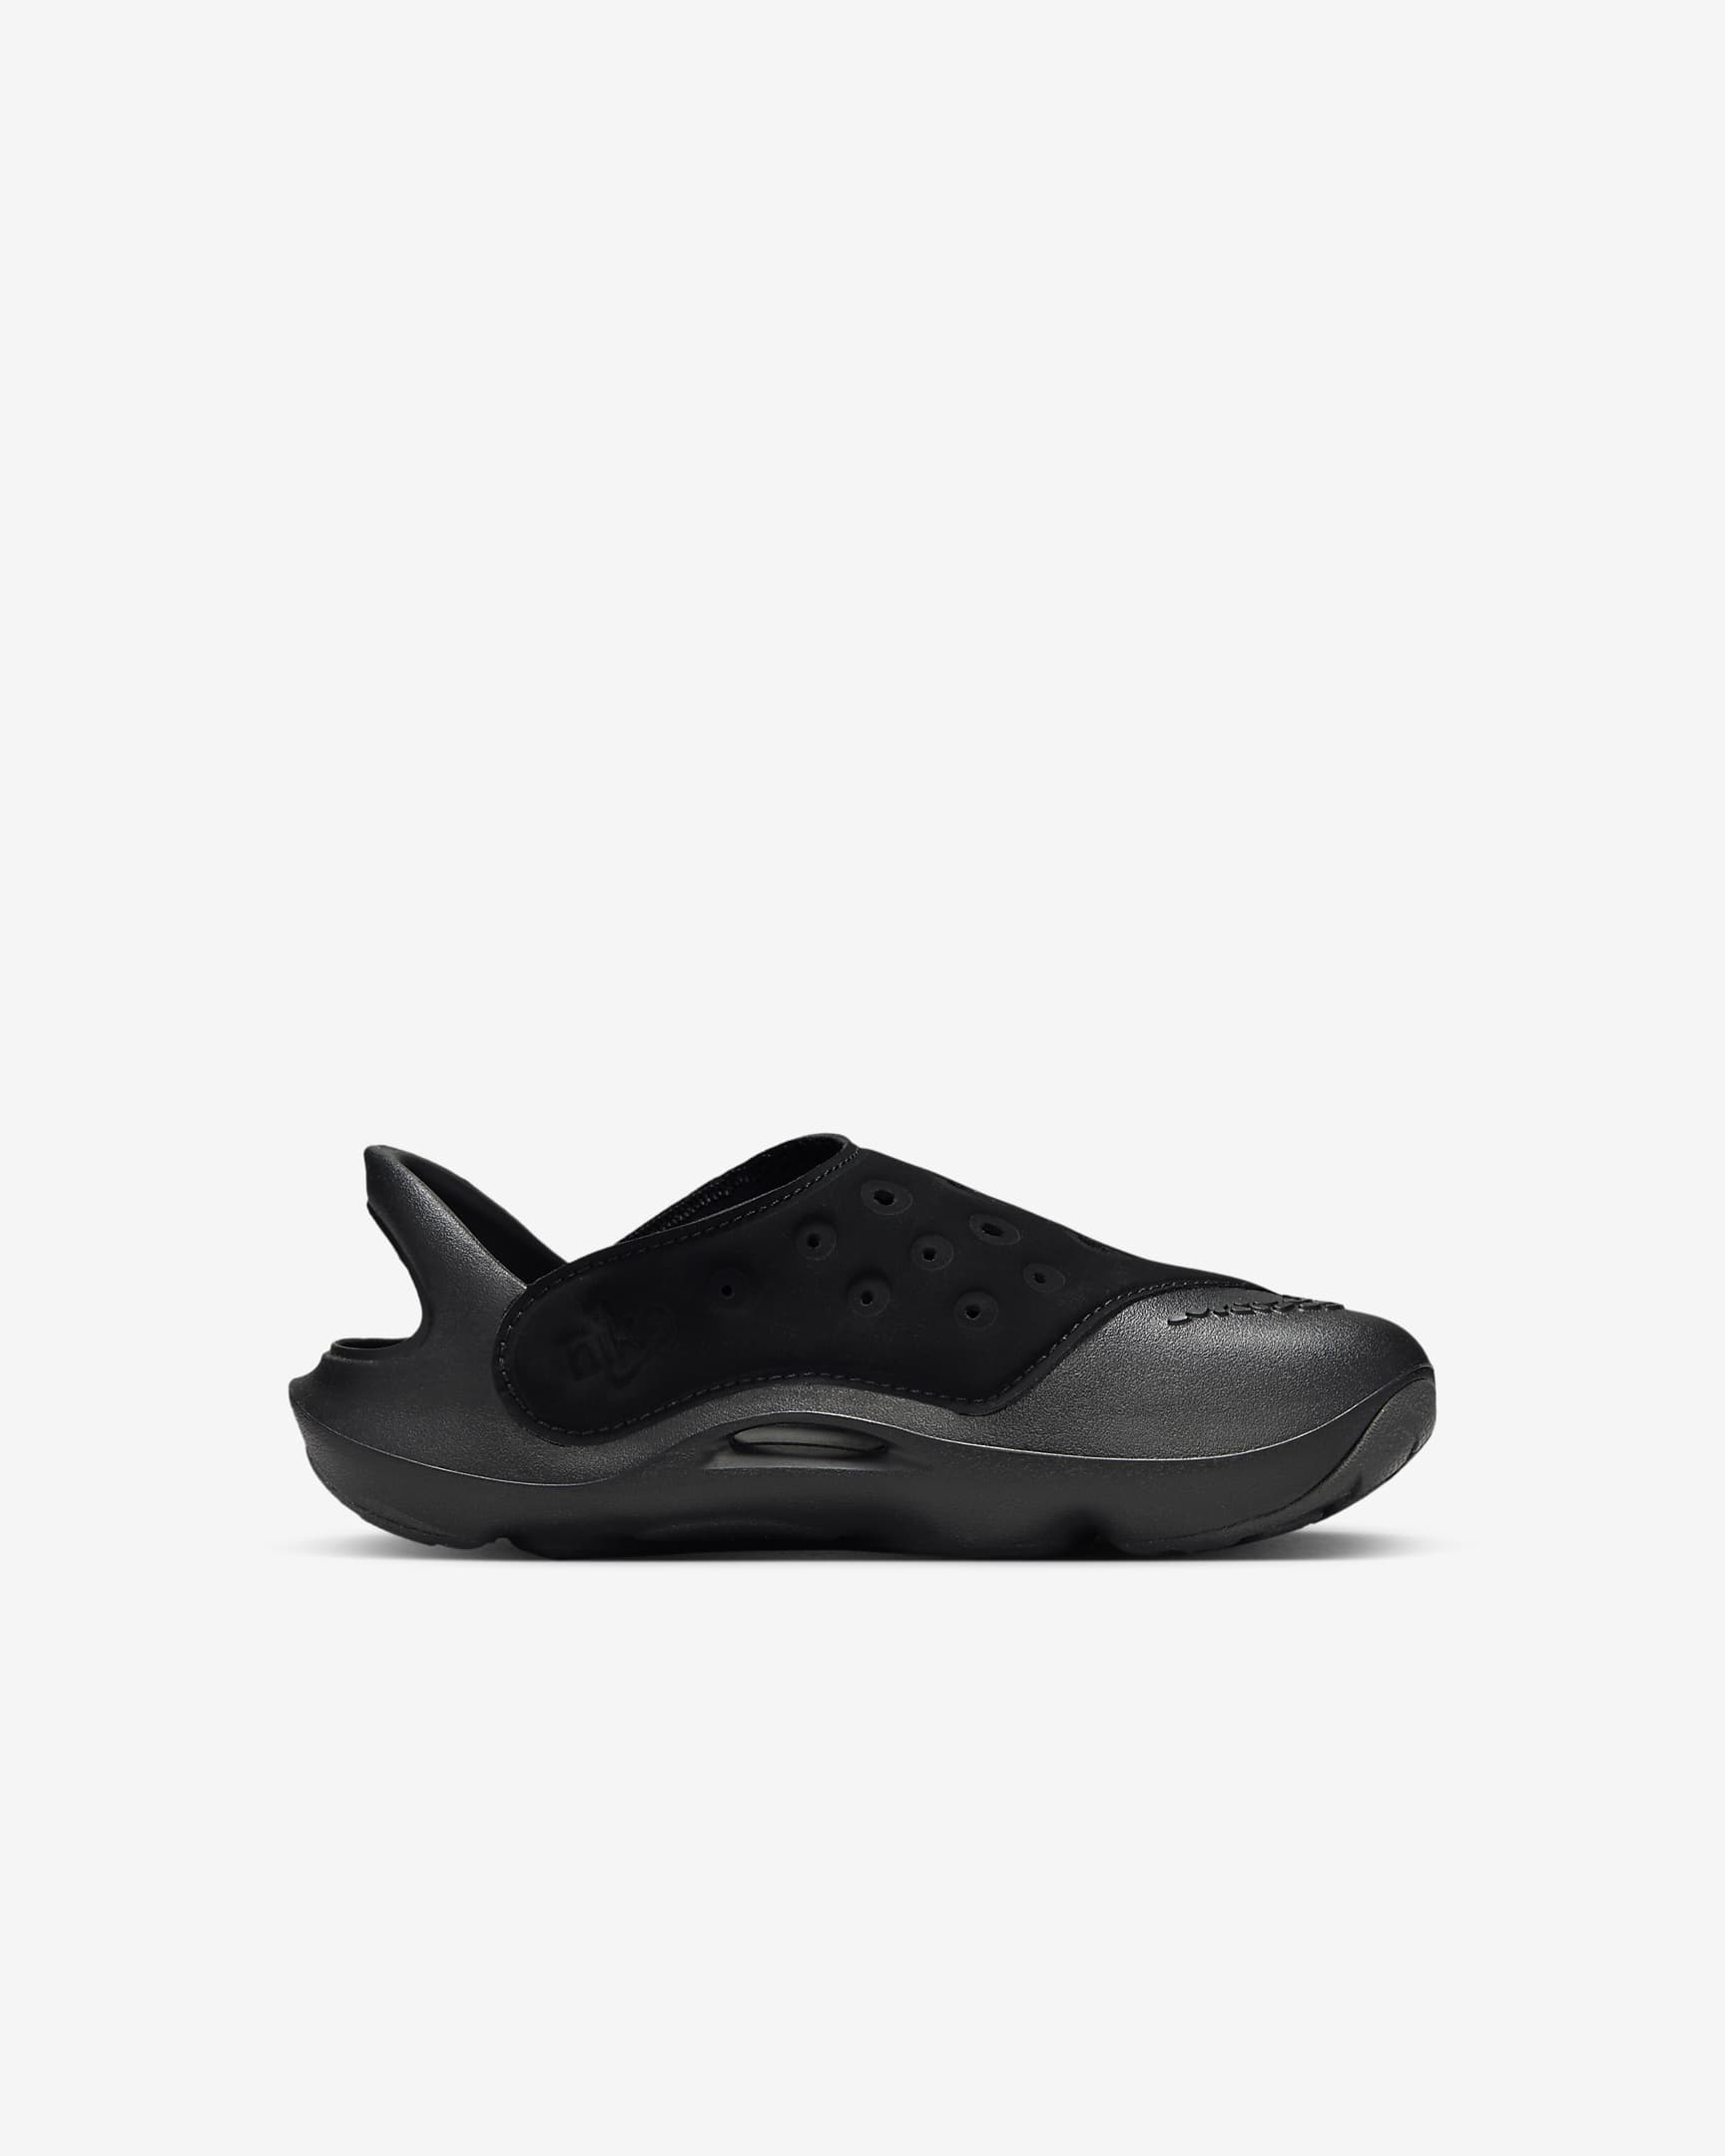 Sandálias Nike Aqua Swoosh para criança - Preto/Anthracite/Branco